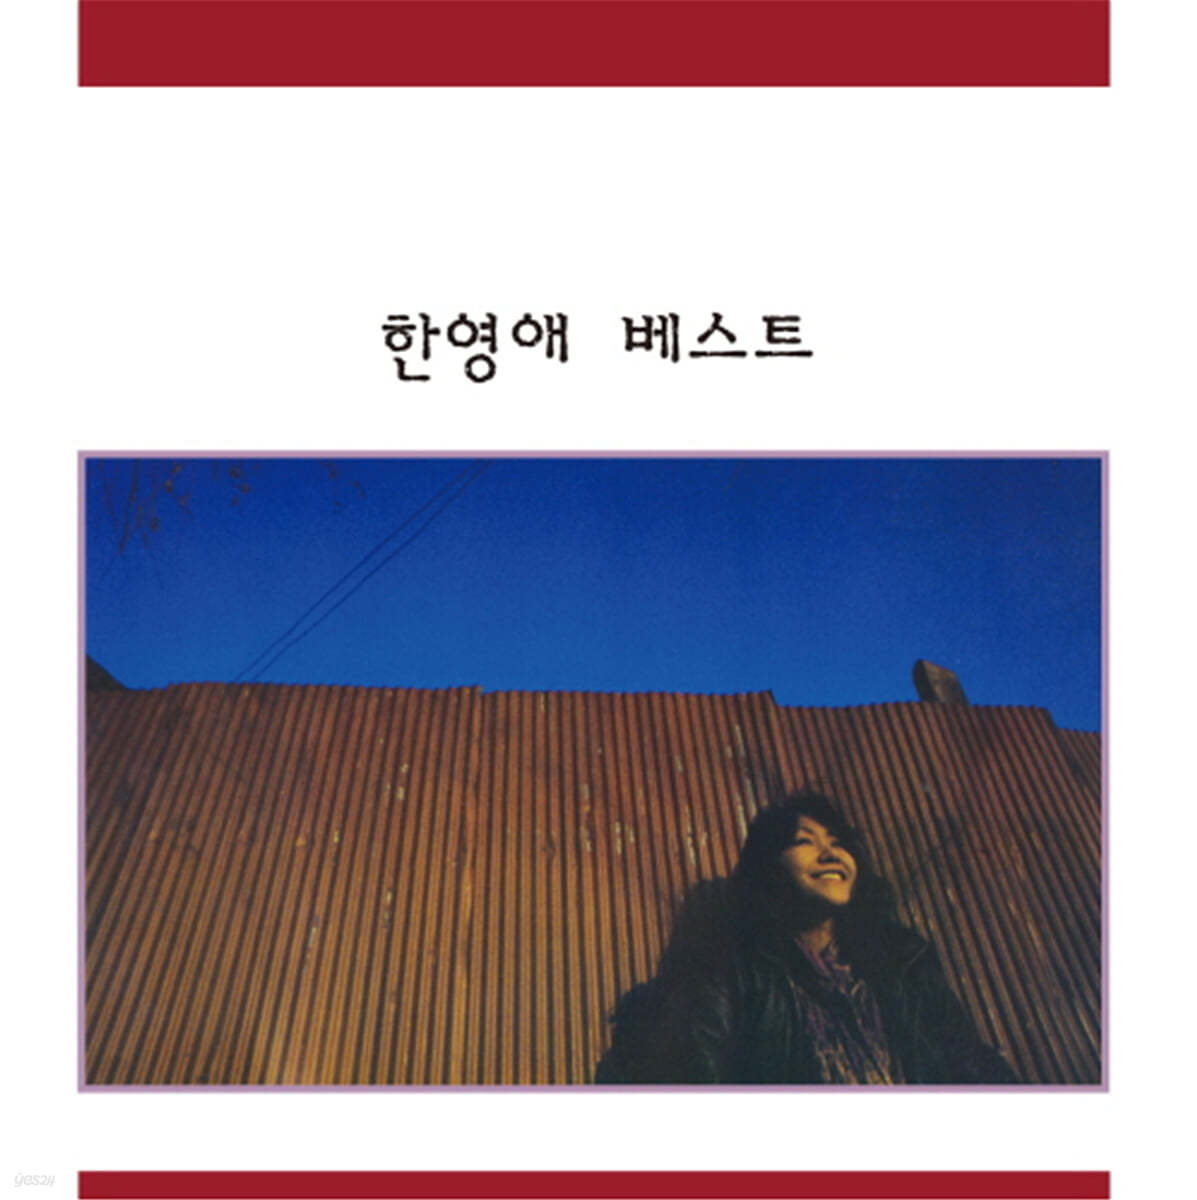 한영애 - 베스트 [LP + 7인치 픽쳐 디스크 Vinyl] 